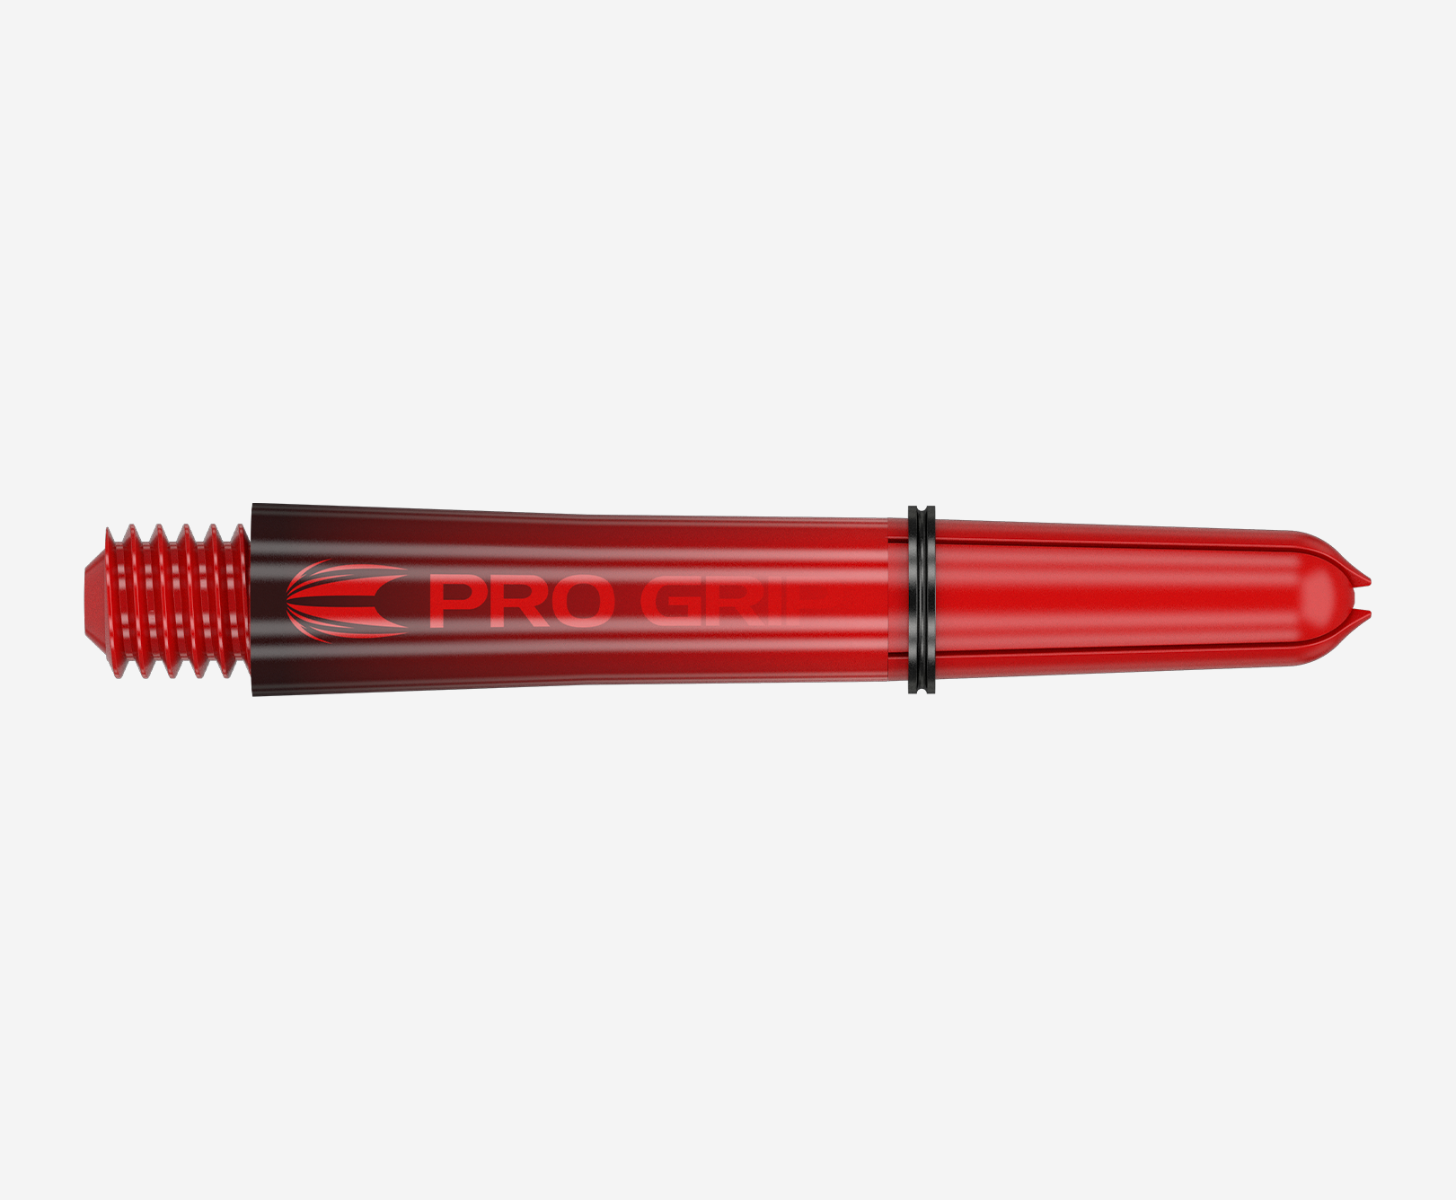 Target Pro Grip Sera Shafts - Black & Red